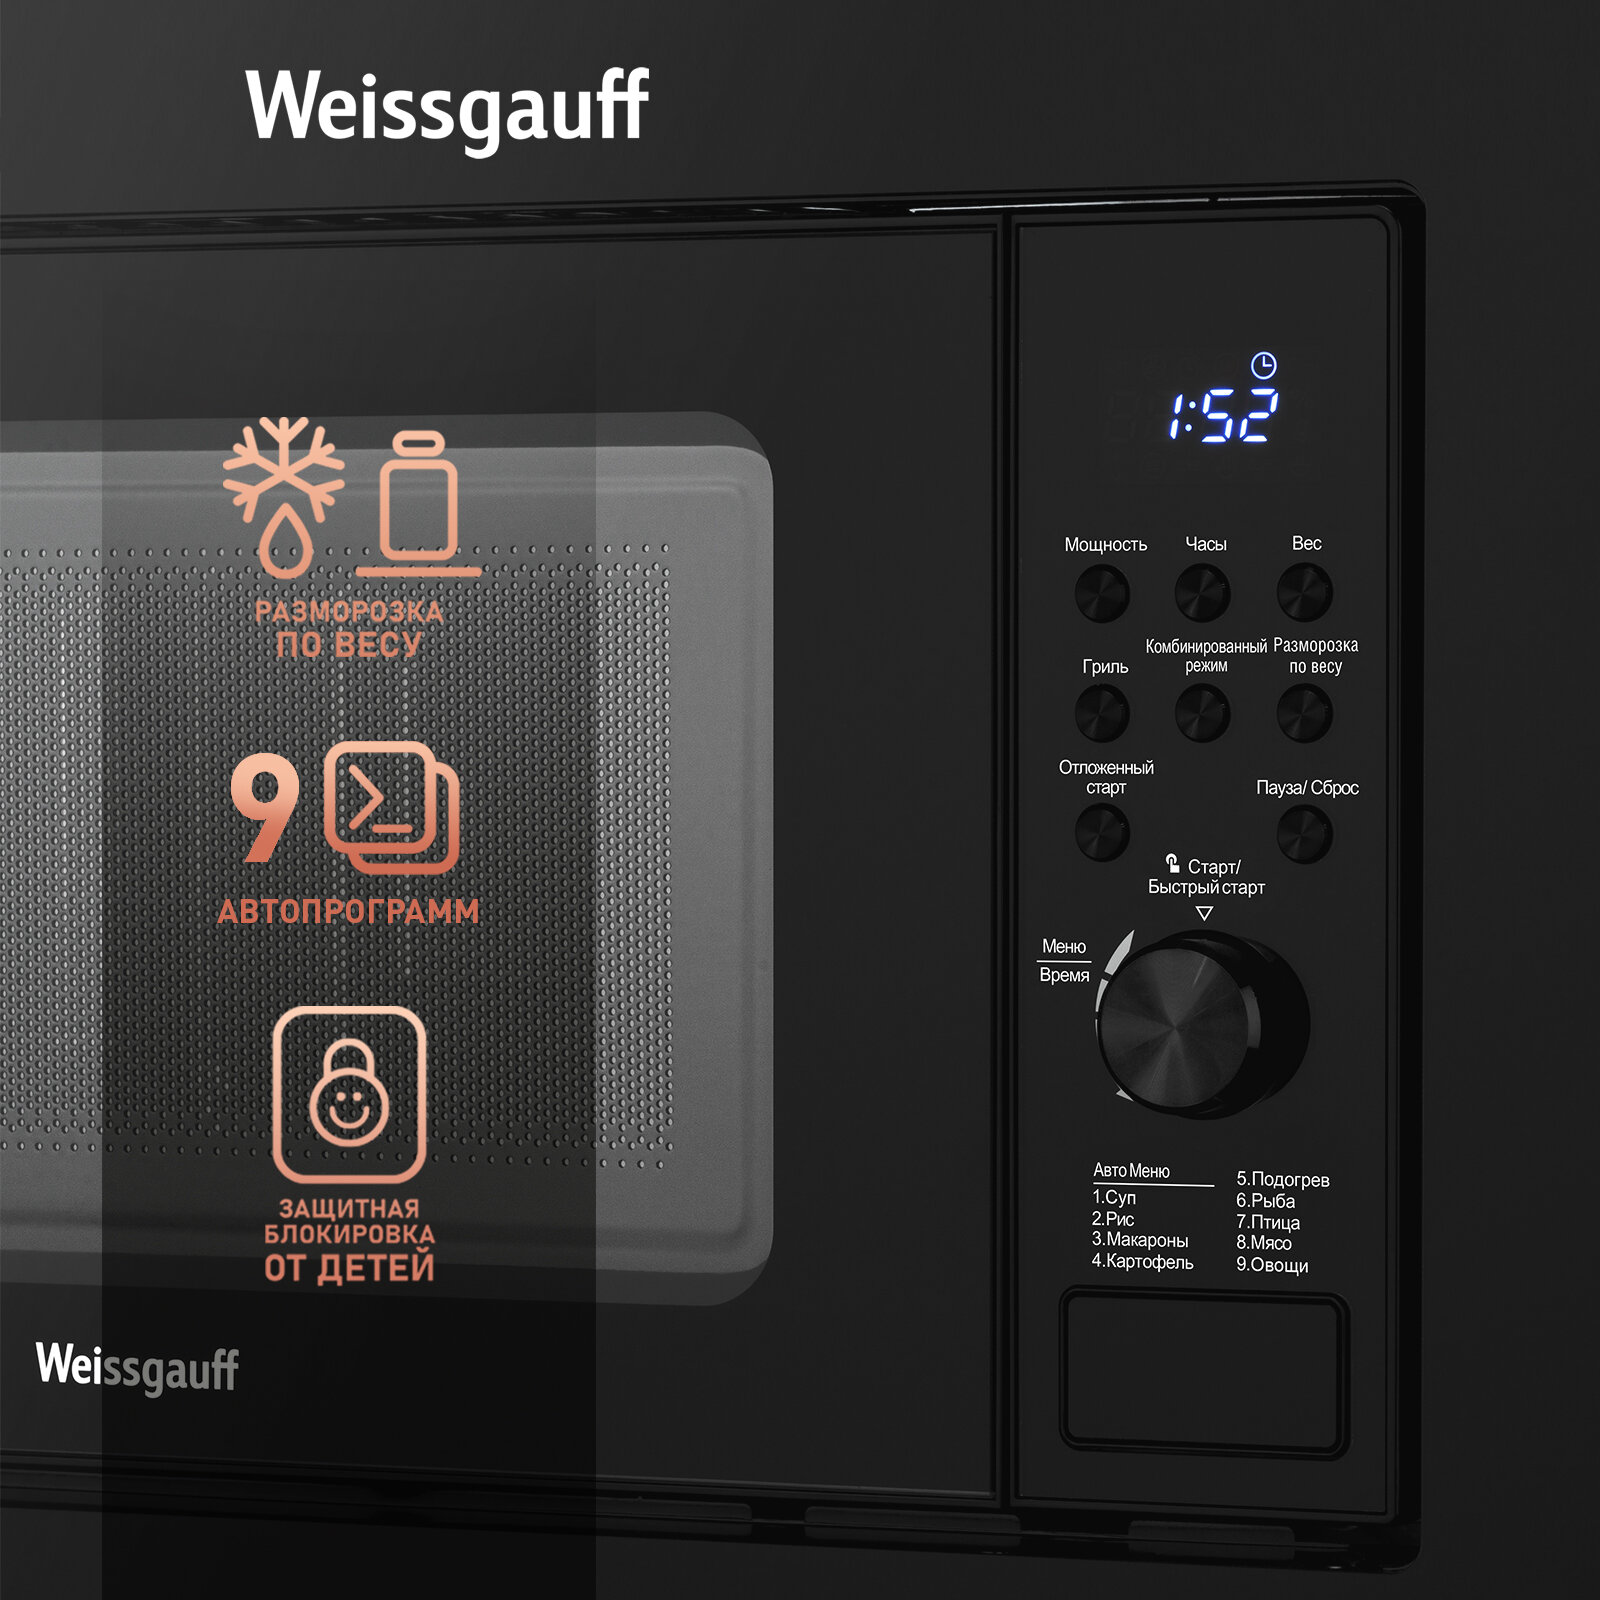 Встраиваемая микроволновая печь Weissgauff HMT-620 Grill 3 года гарантии, объем 20 литров, гриль, разморозка по весу, Блокировка от детей